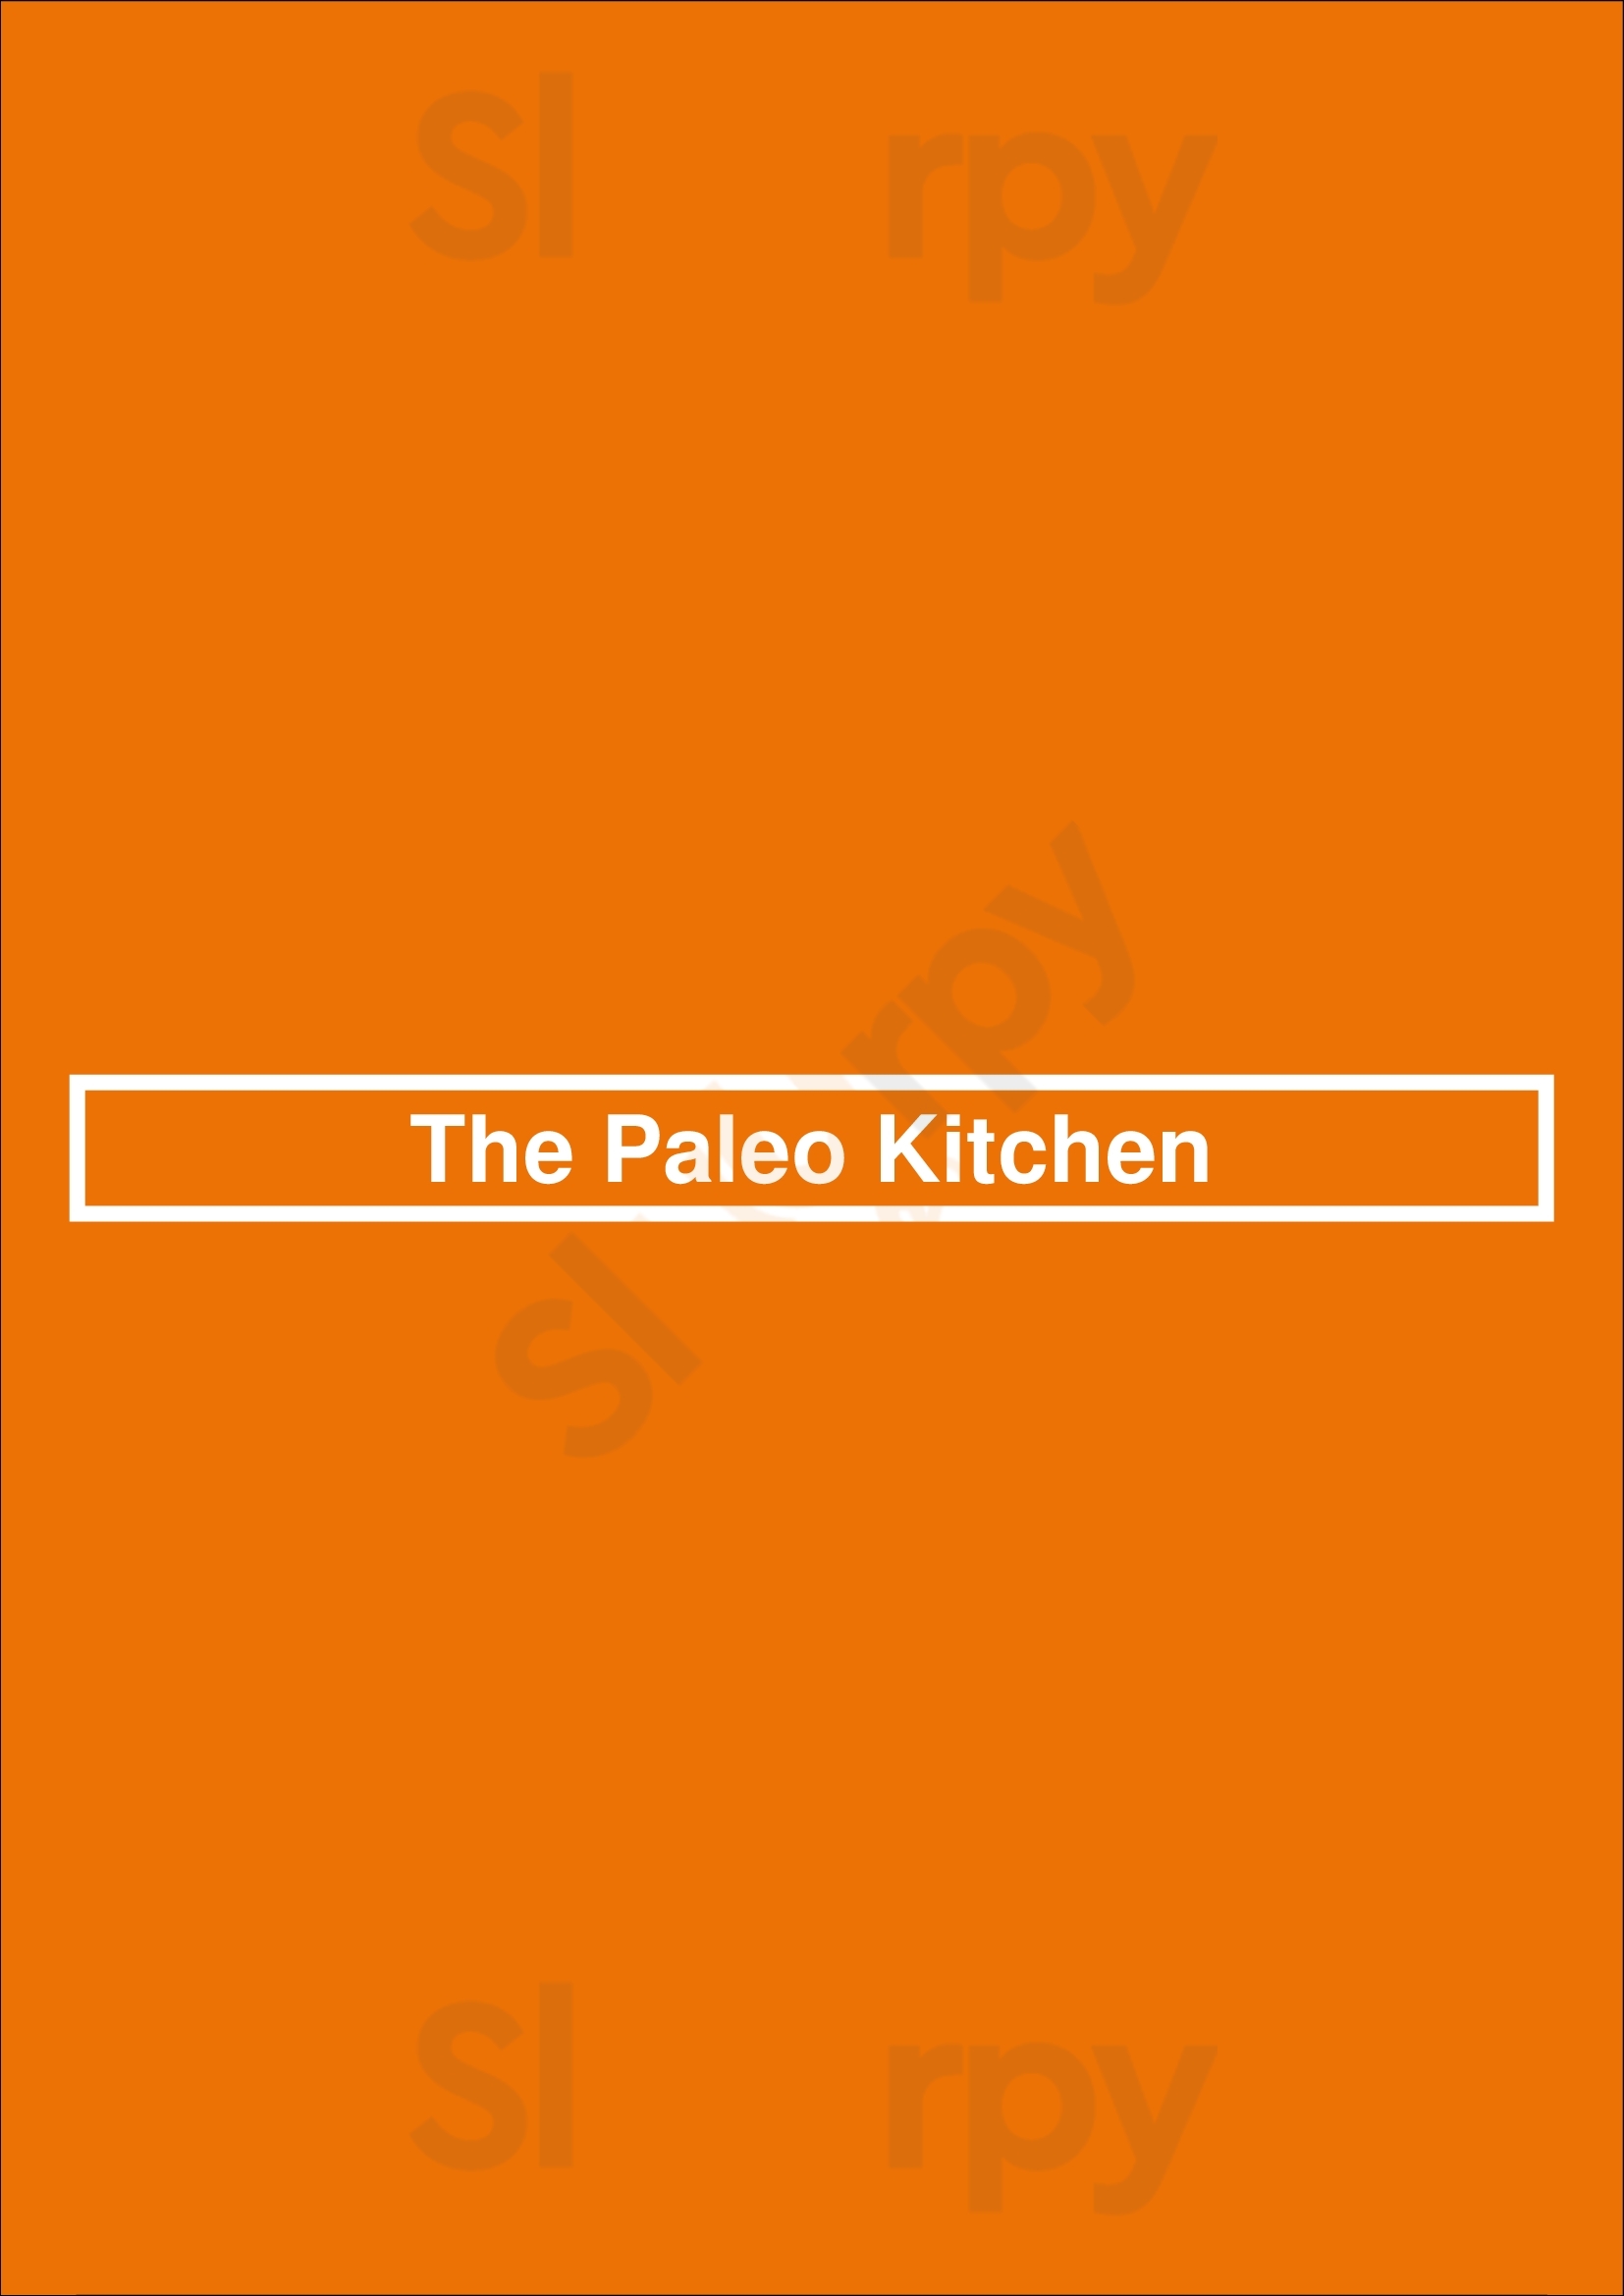 The Paleo Kitchen Lisboa Menu - 1